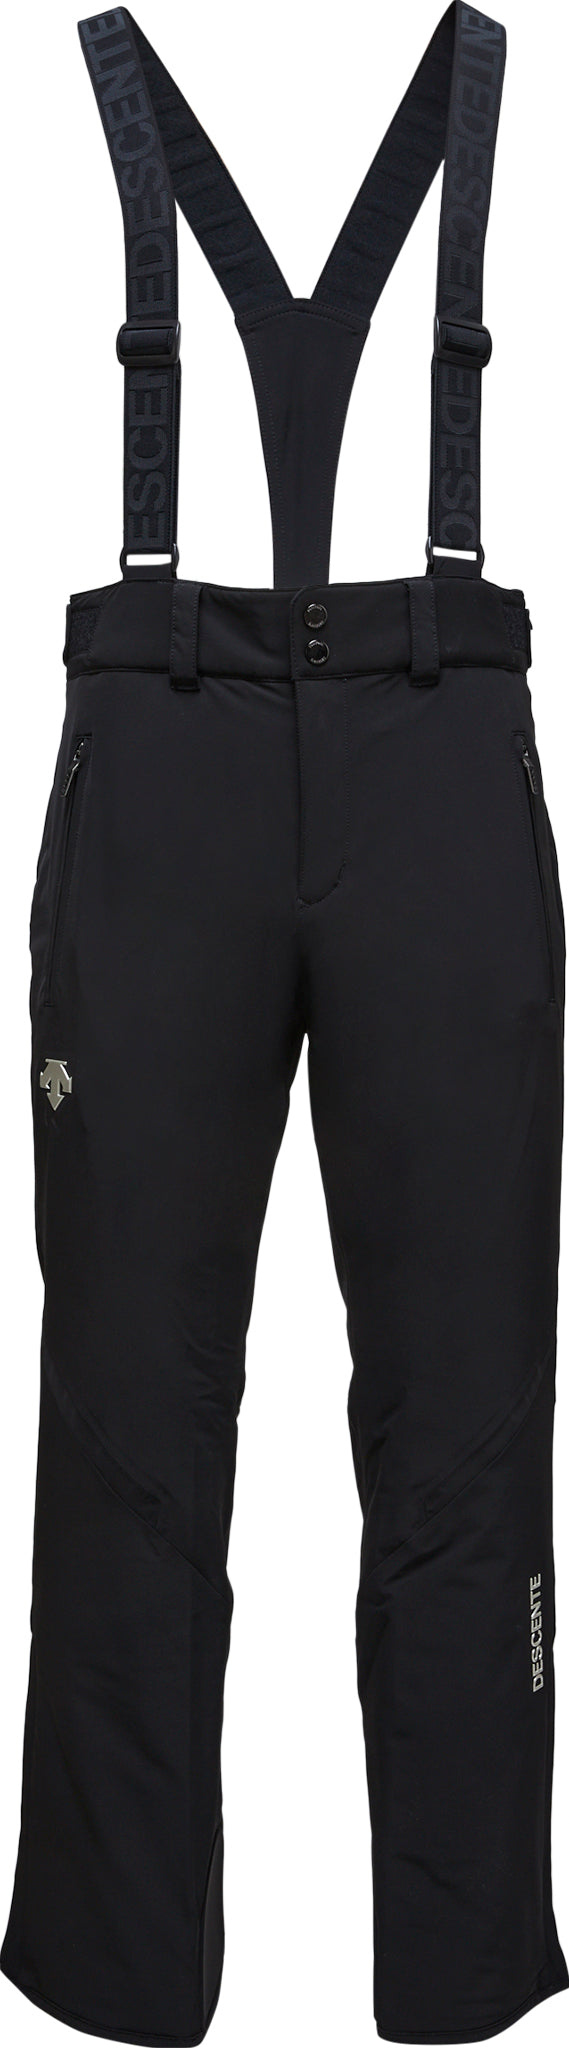 Descente golf pants Men's Autumn winter Pants Stretch Lightweight